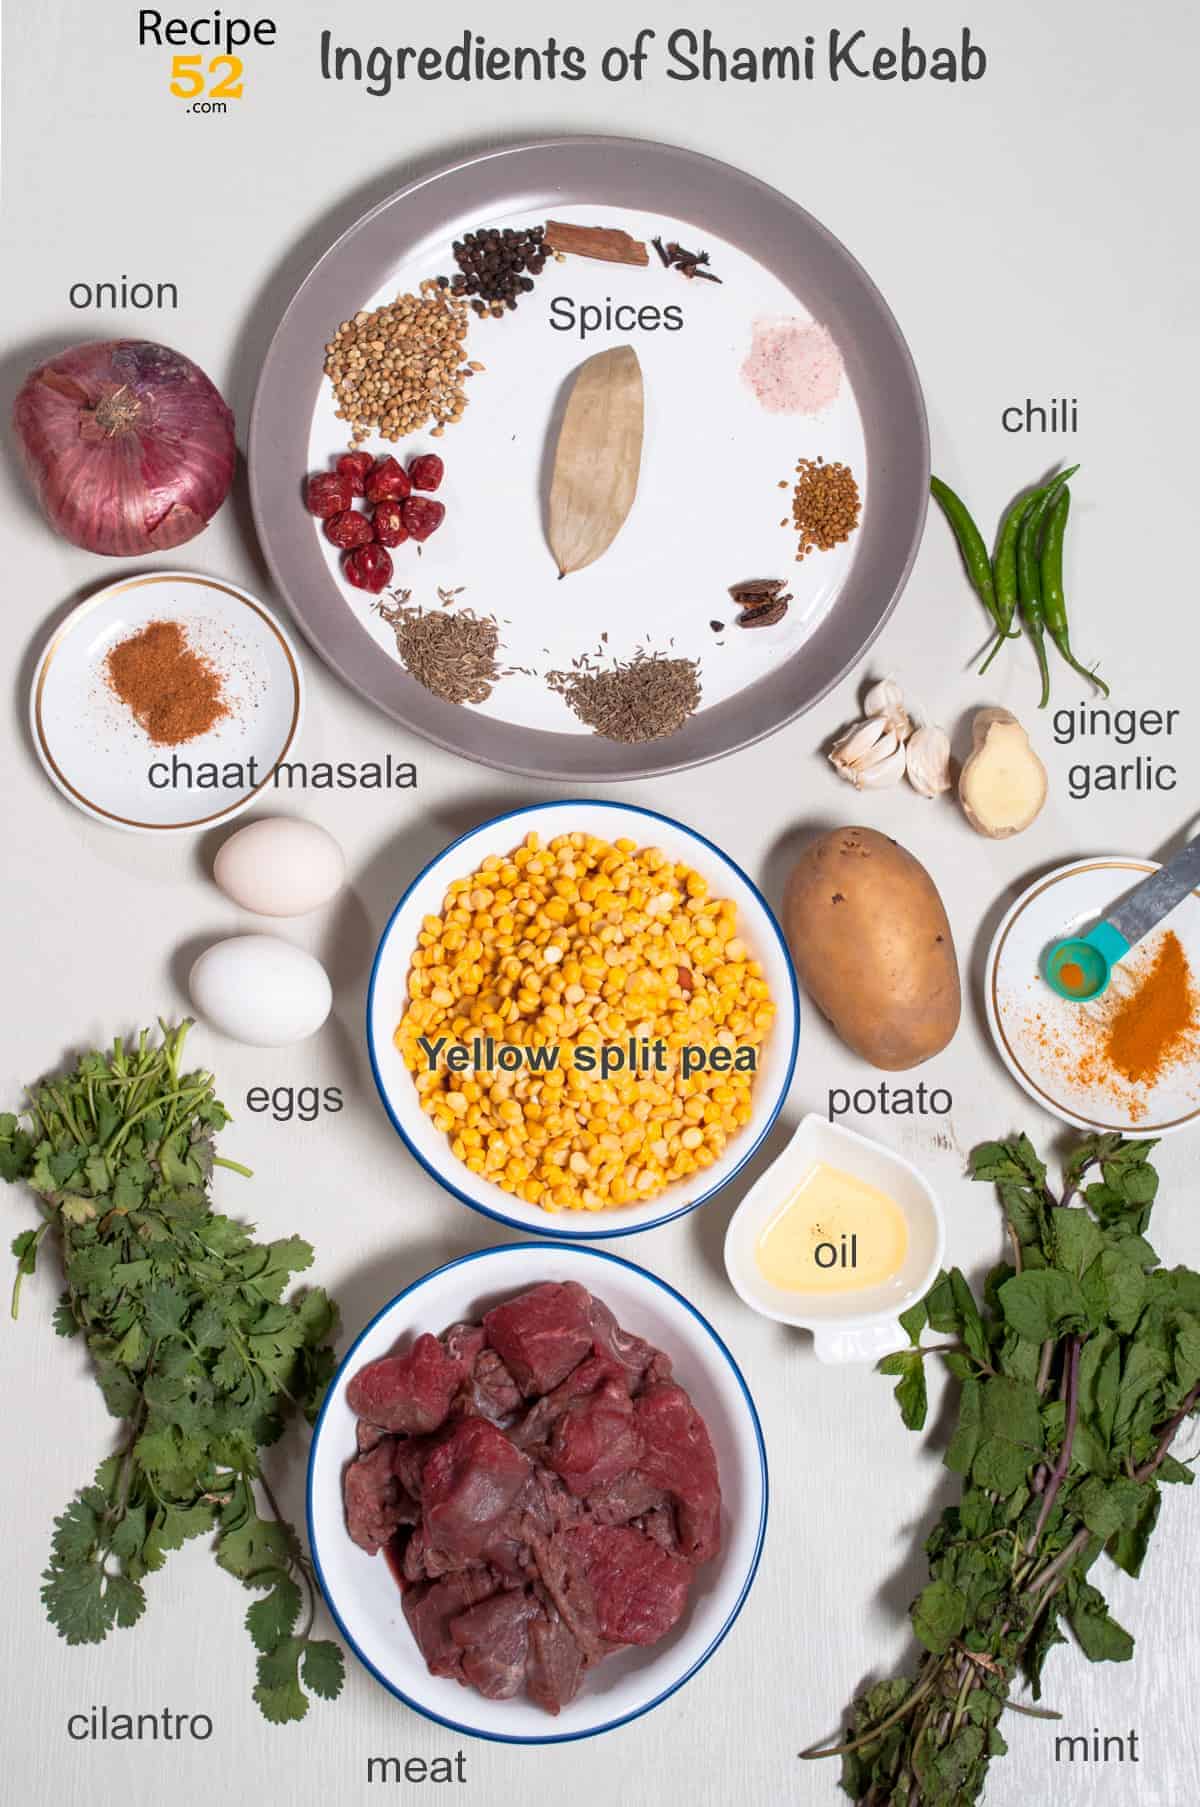 Ingredients of shami kebab